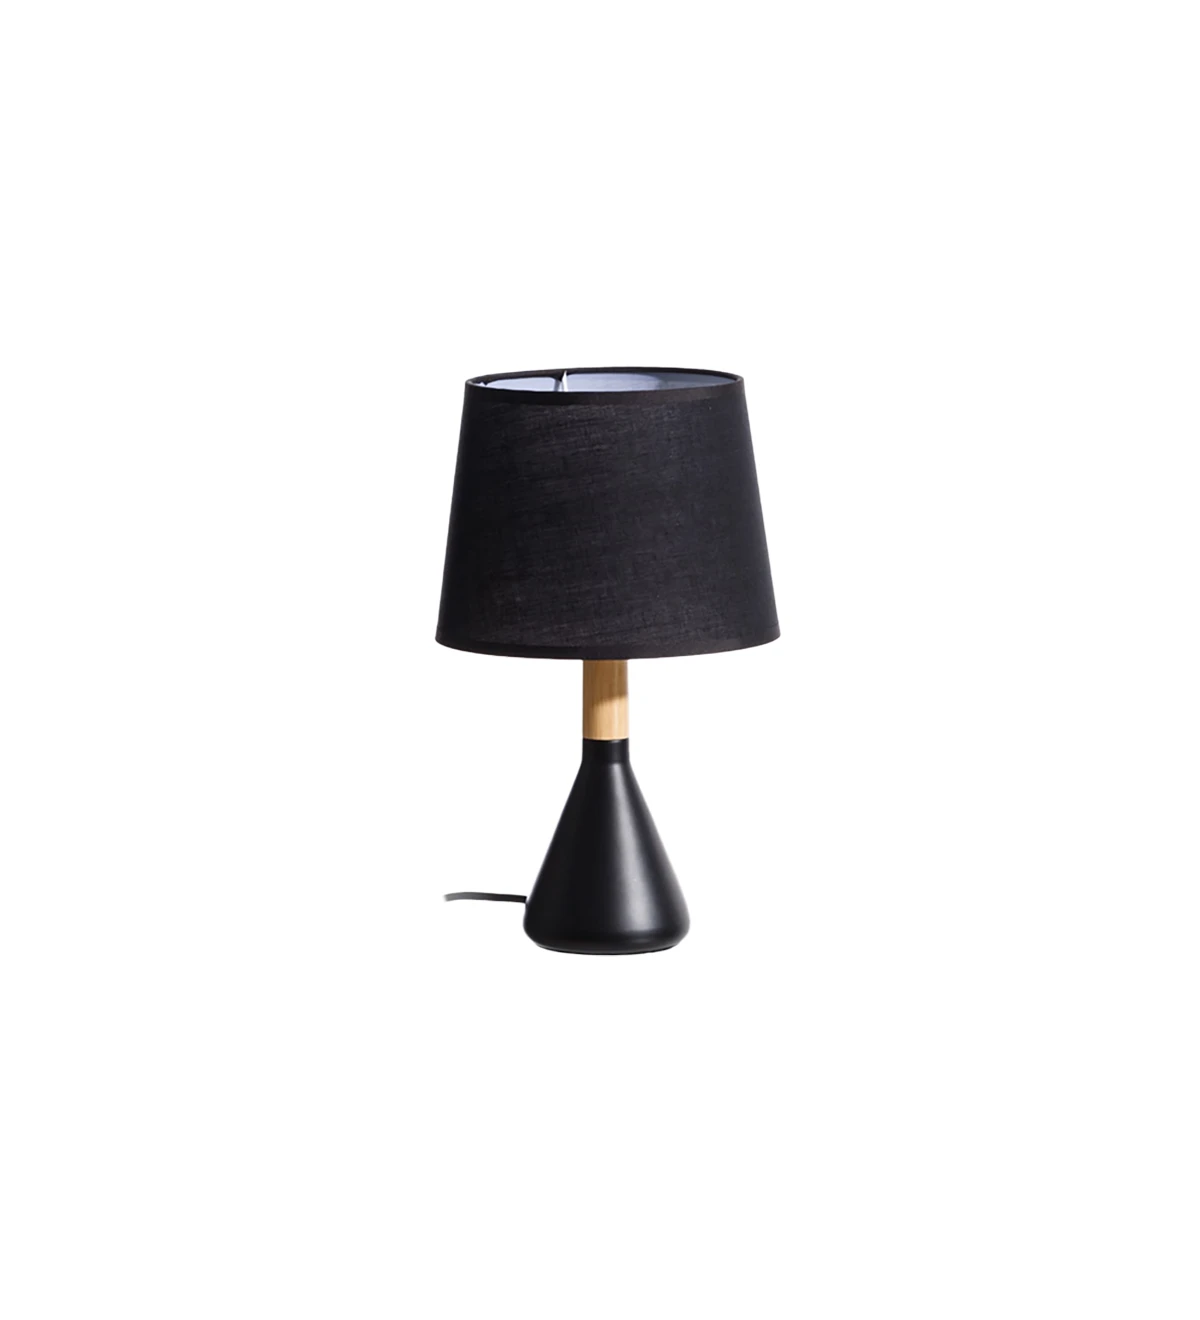  Lampe de table avec base en métal peint en noir et bois avec abat-jour en tissu noir.